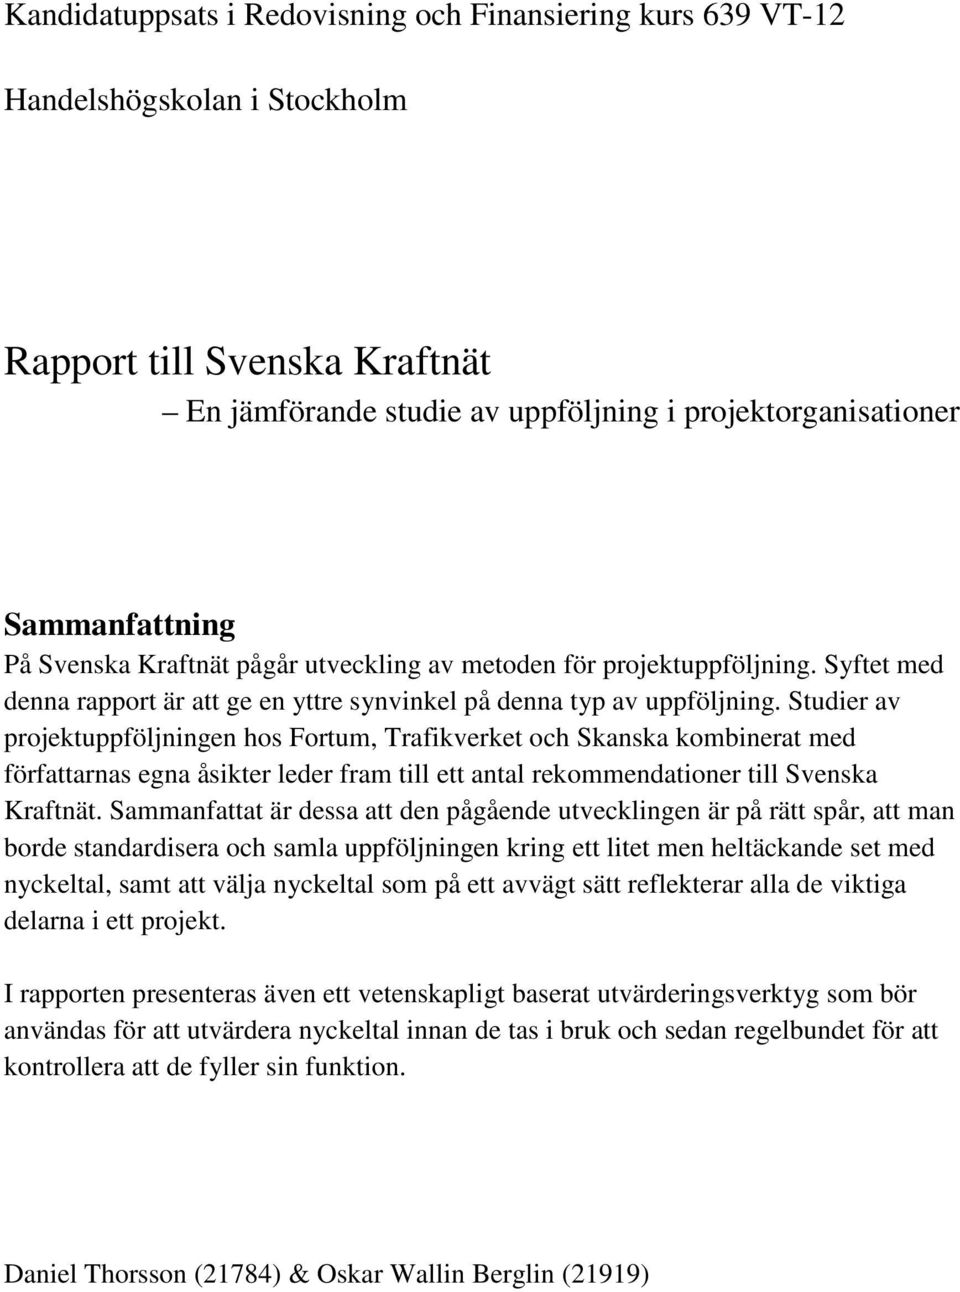 Studier av projektuppföljningen hos Fortum, Trafikverket och Skanska kombinerat med författarnas egna åsikter leder fram till ett antal rekommendationer till Svenska Kraftnät.